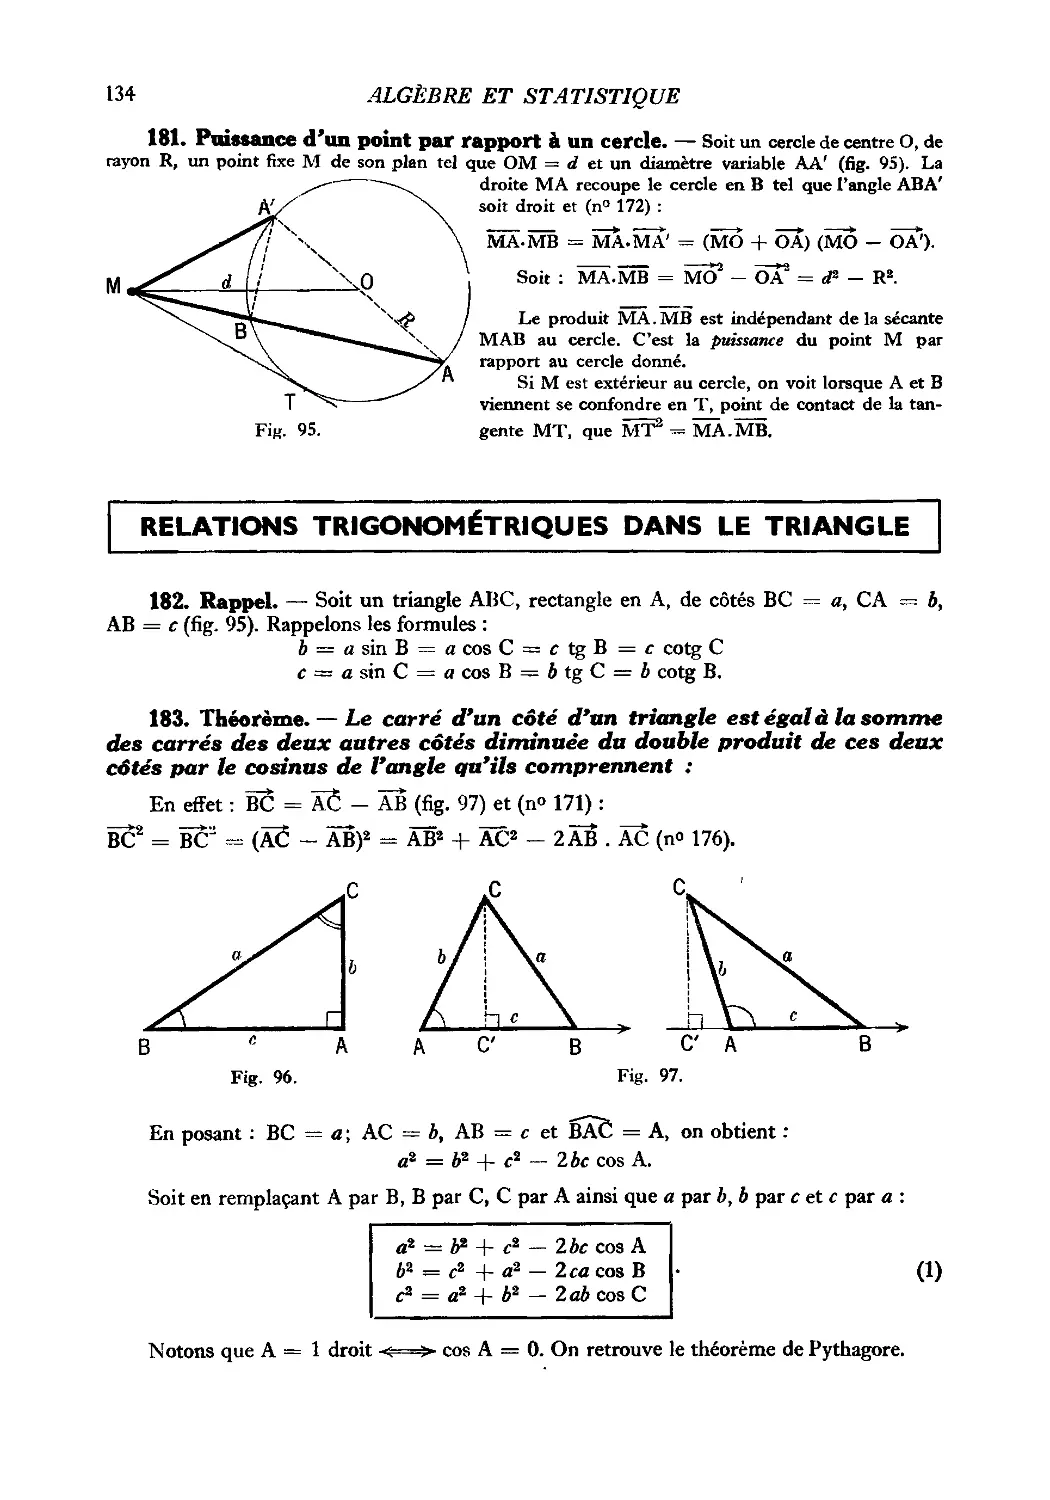 181. Puissance d’un point par rapport à un cercle
Relations trigonométriques dans le triangle
183. Théorème